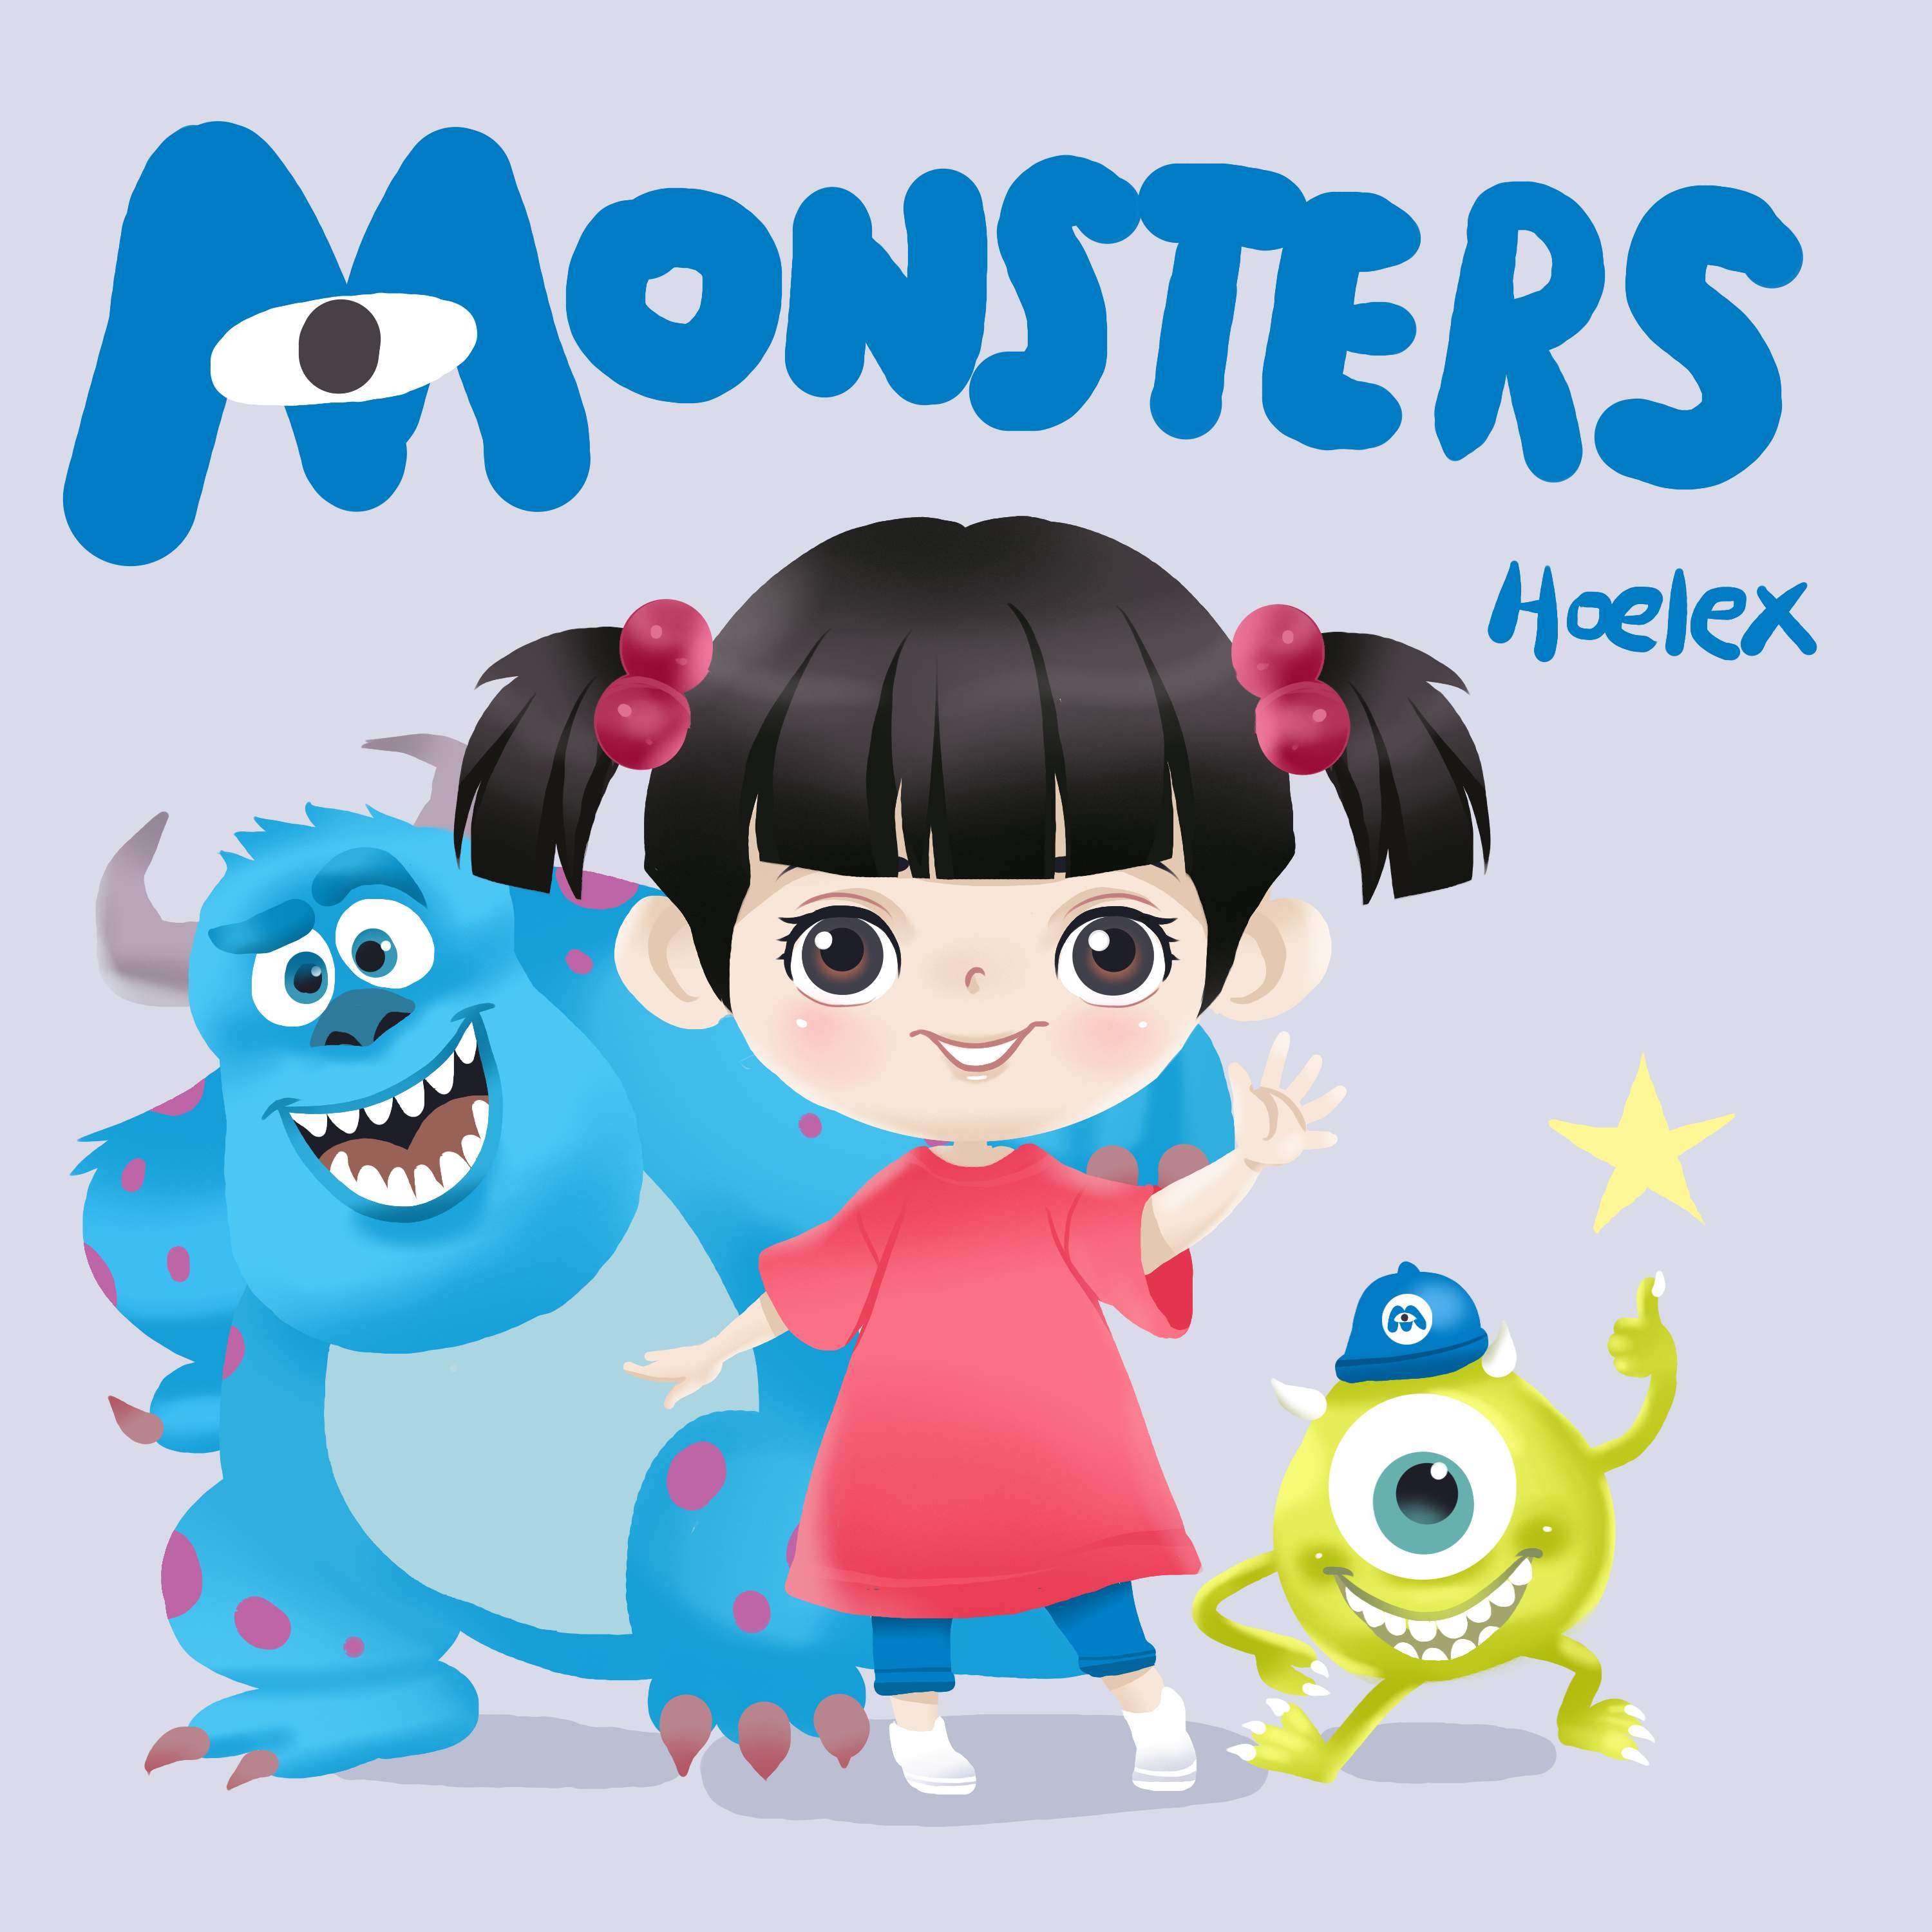 二等身Ｑ版-怪獸電力公司Monsters, Inc.阿布-hoelex.jpg